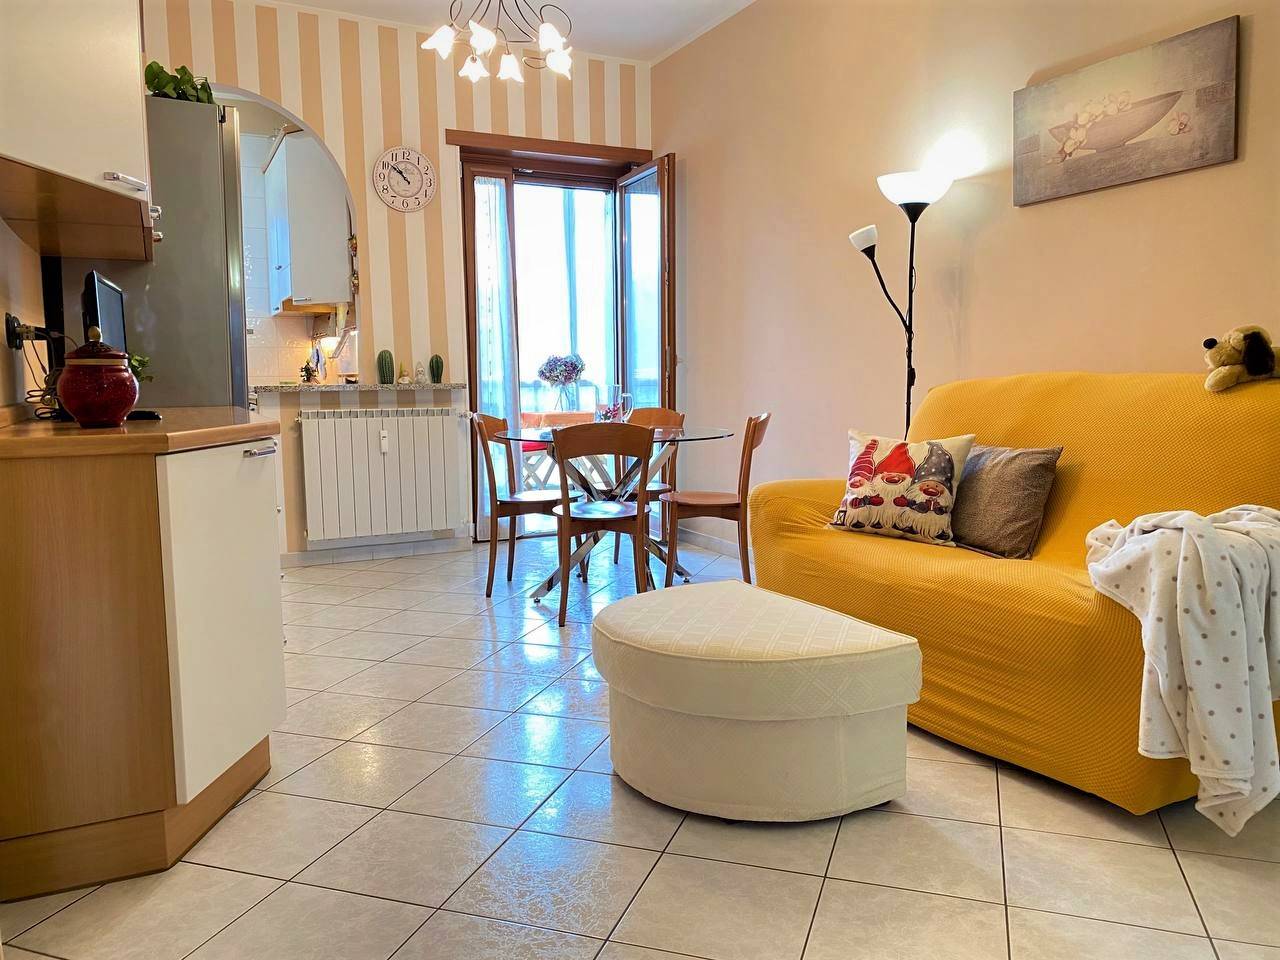 Appartamento in vendita a Banchette, 2 locali, prezzo € 57.000 | CambioCasa.it